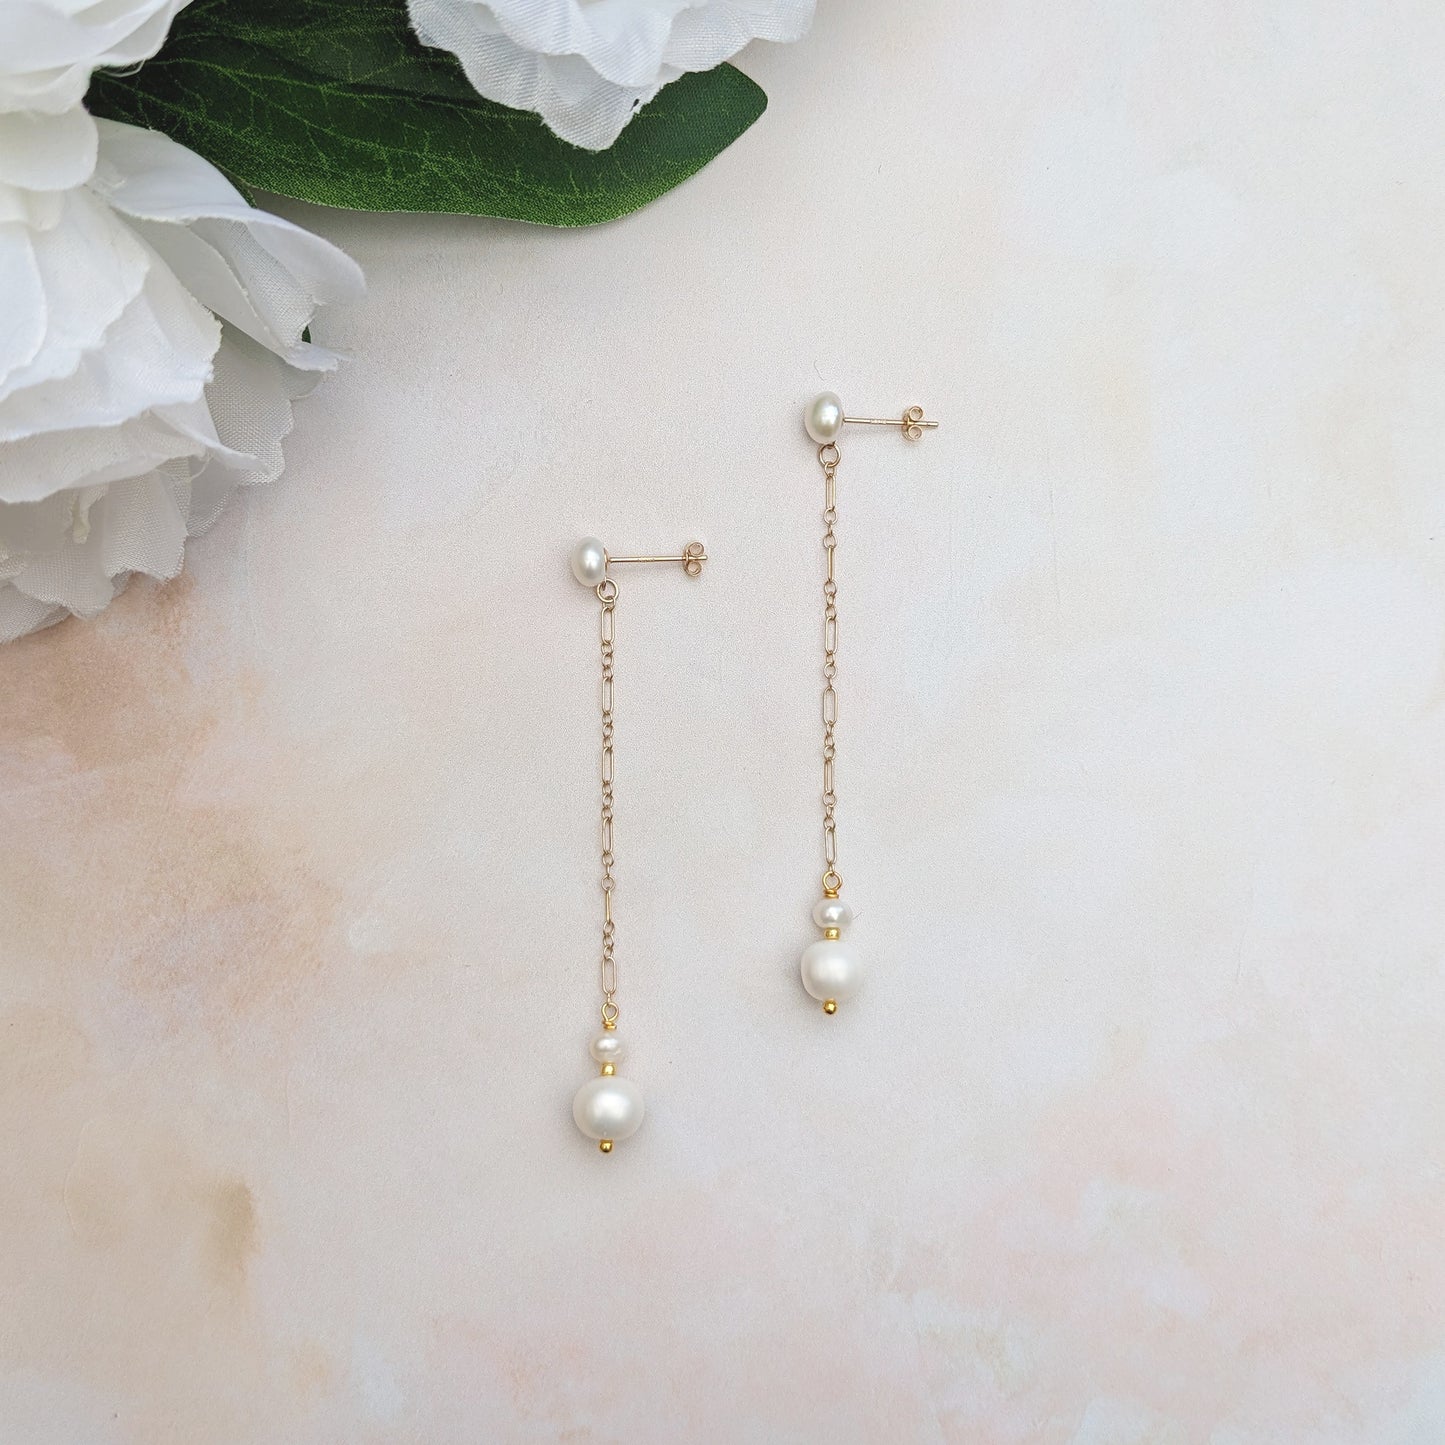 Pearl drop earrings for weddings - Susie Warner